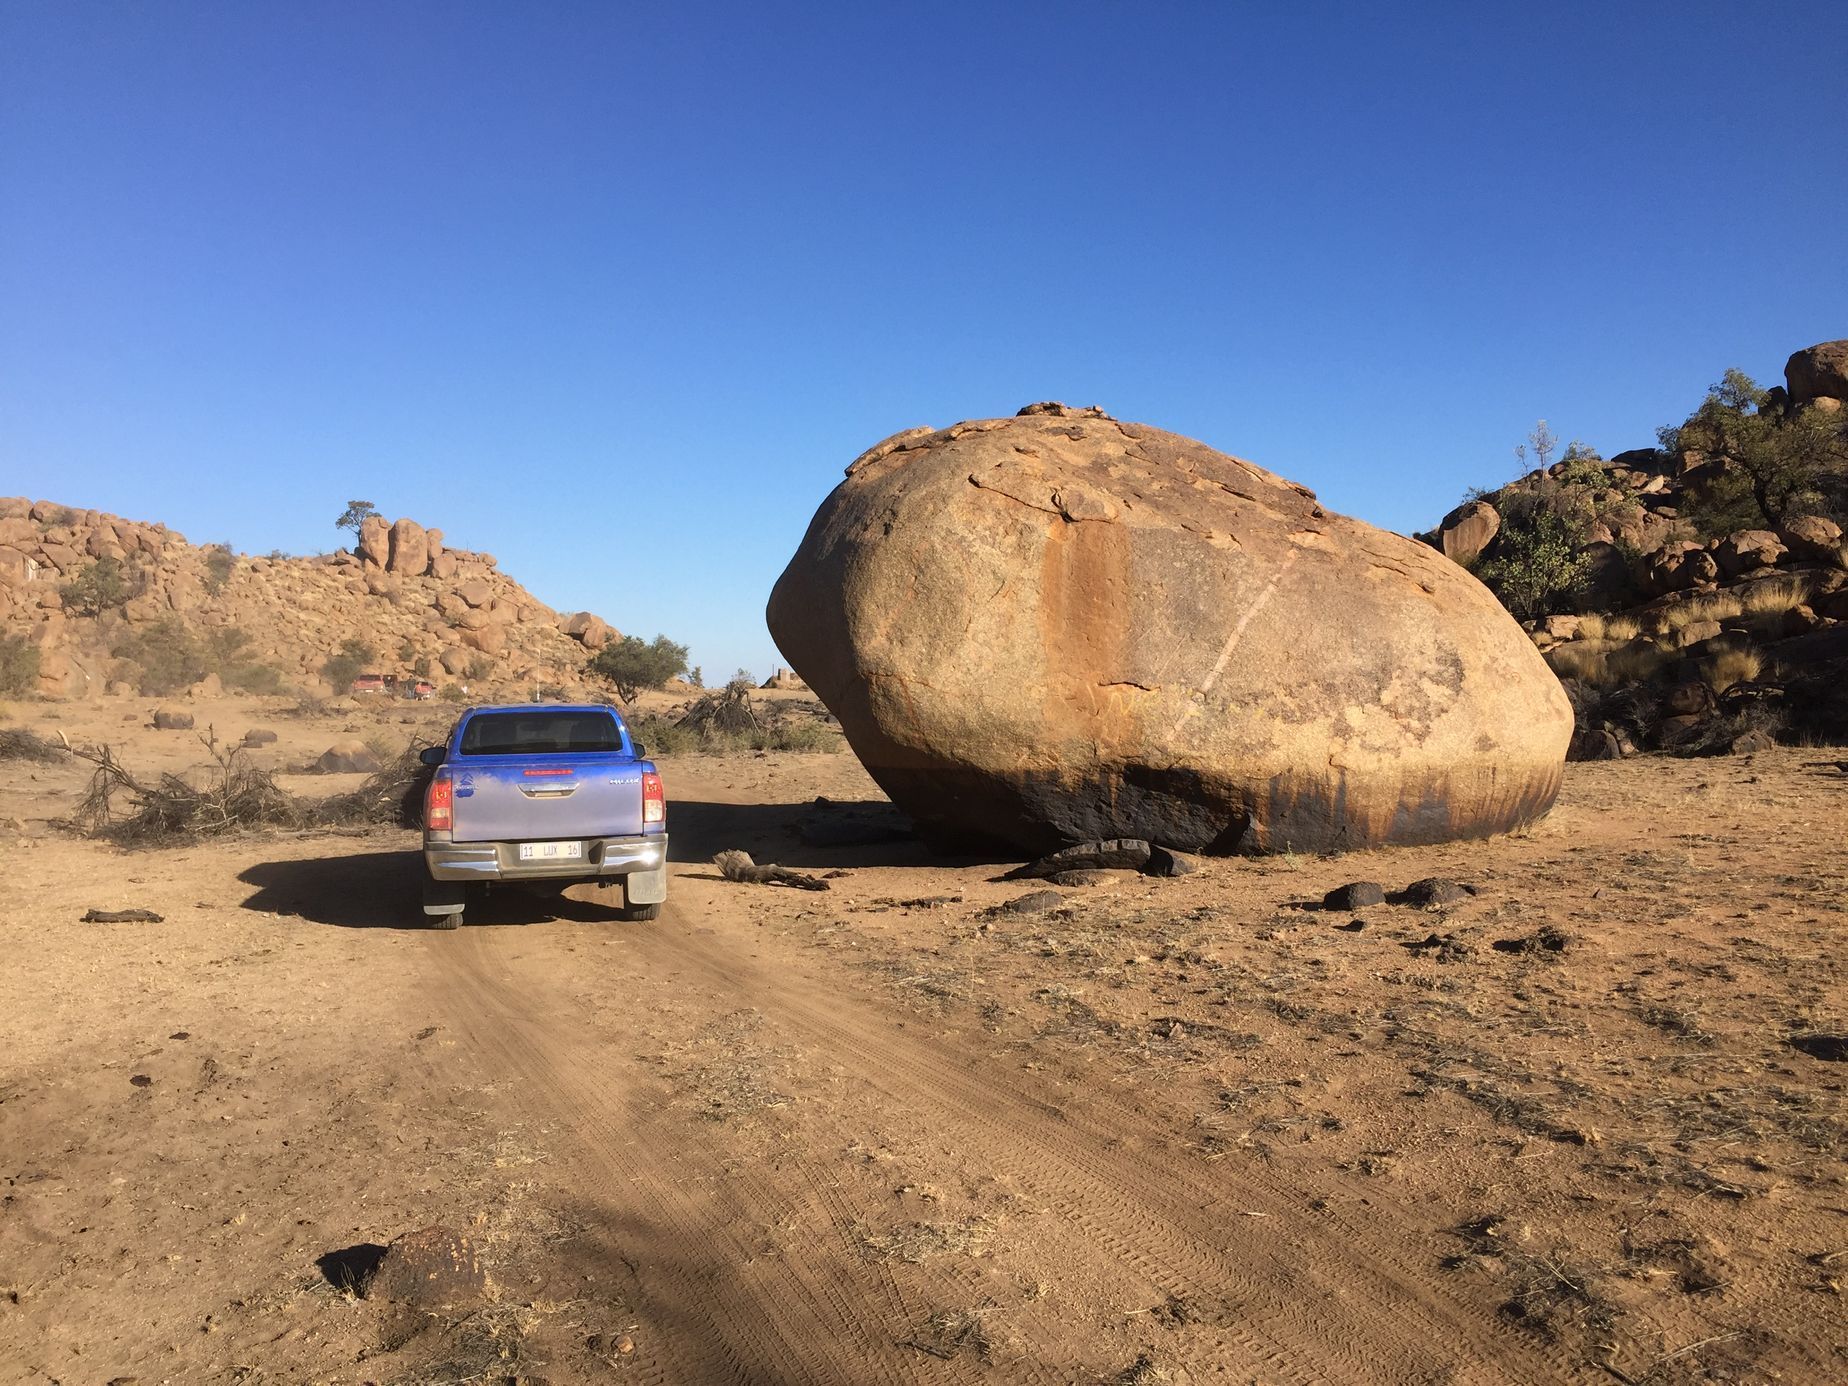 Cesta po Namibii